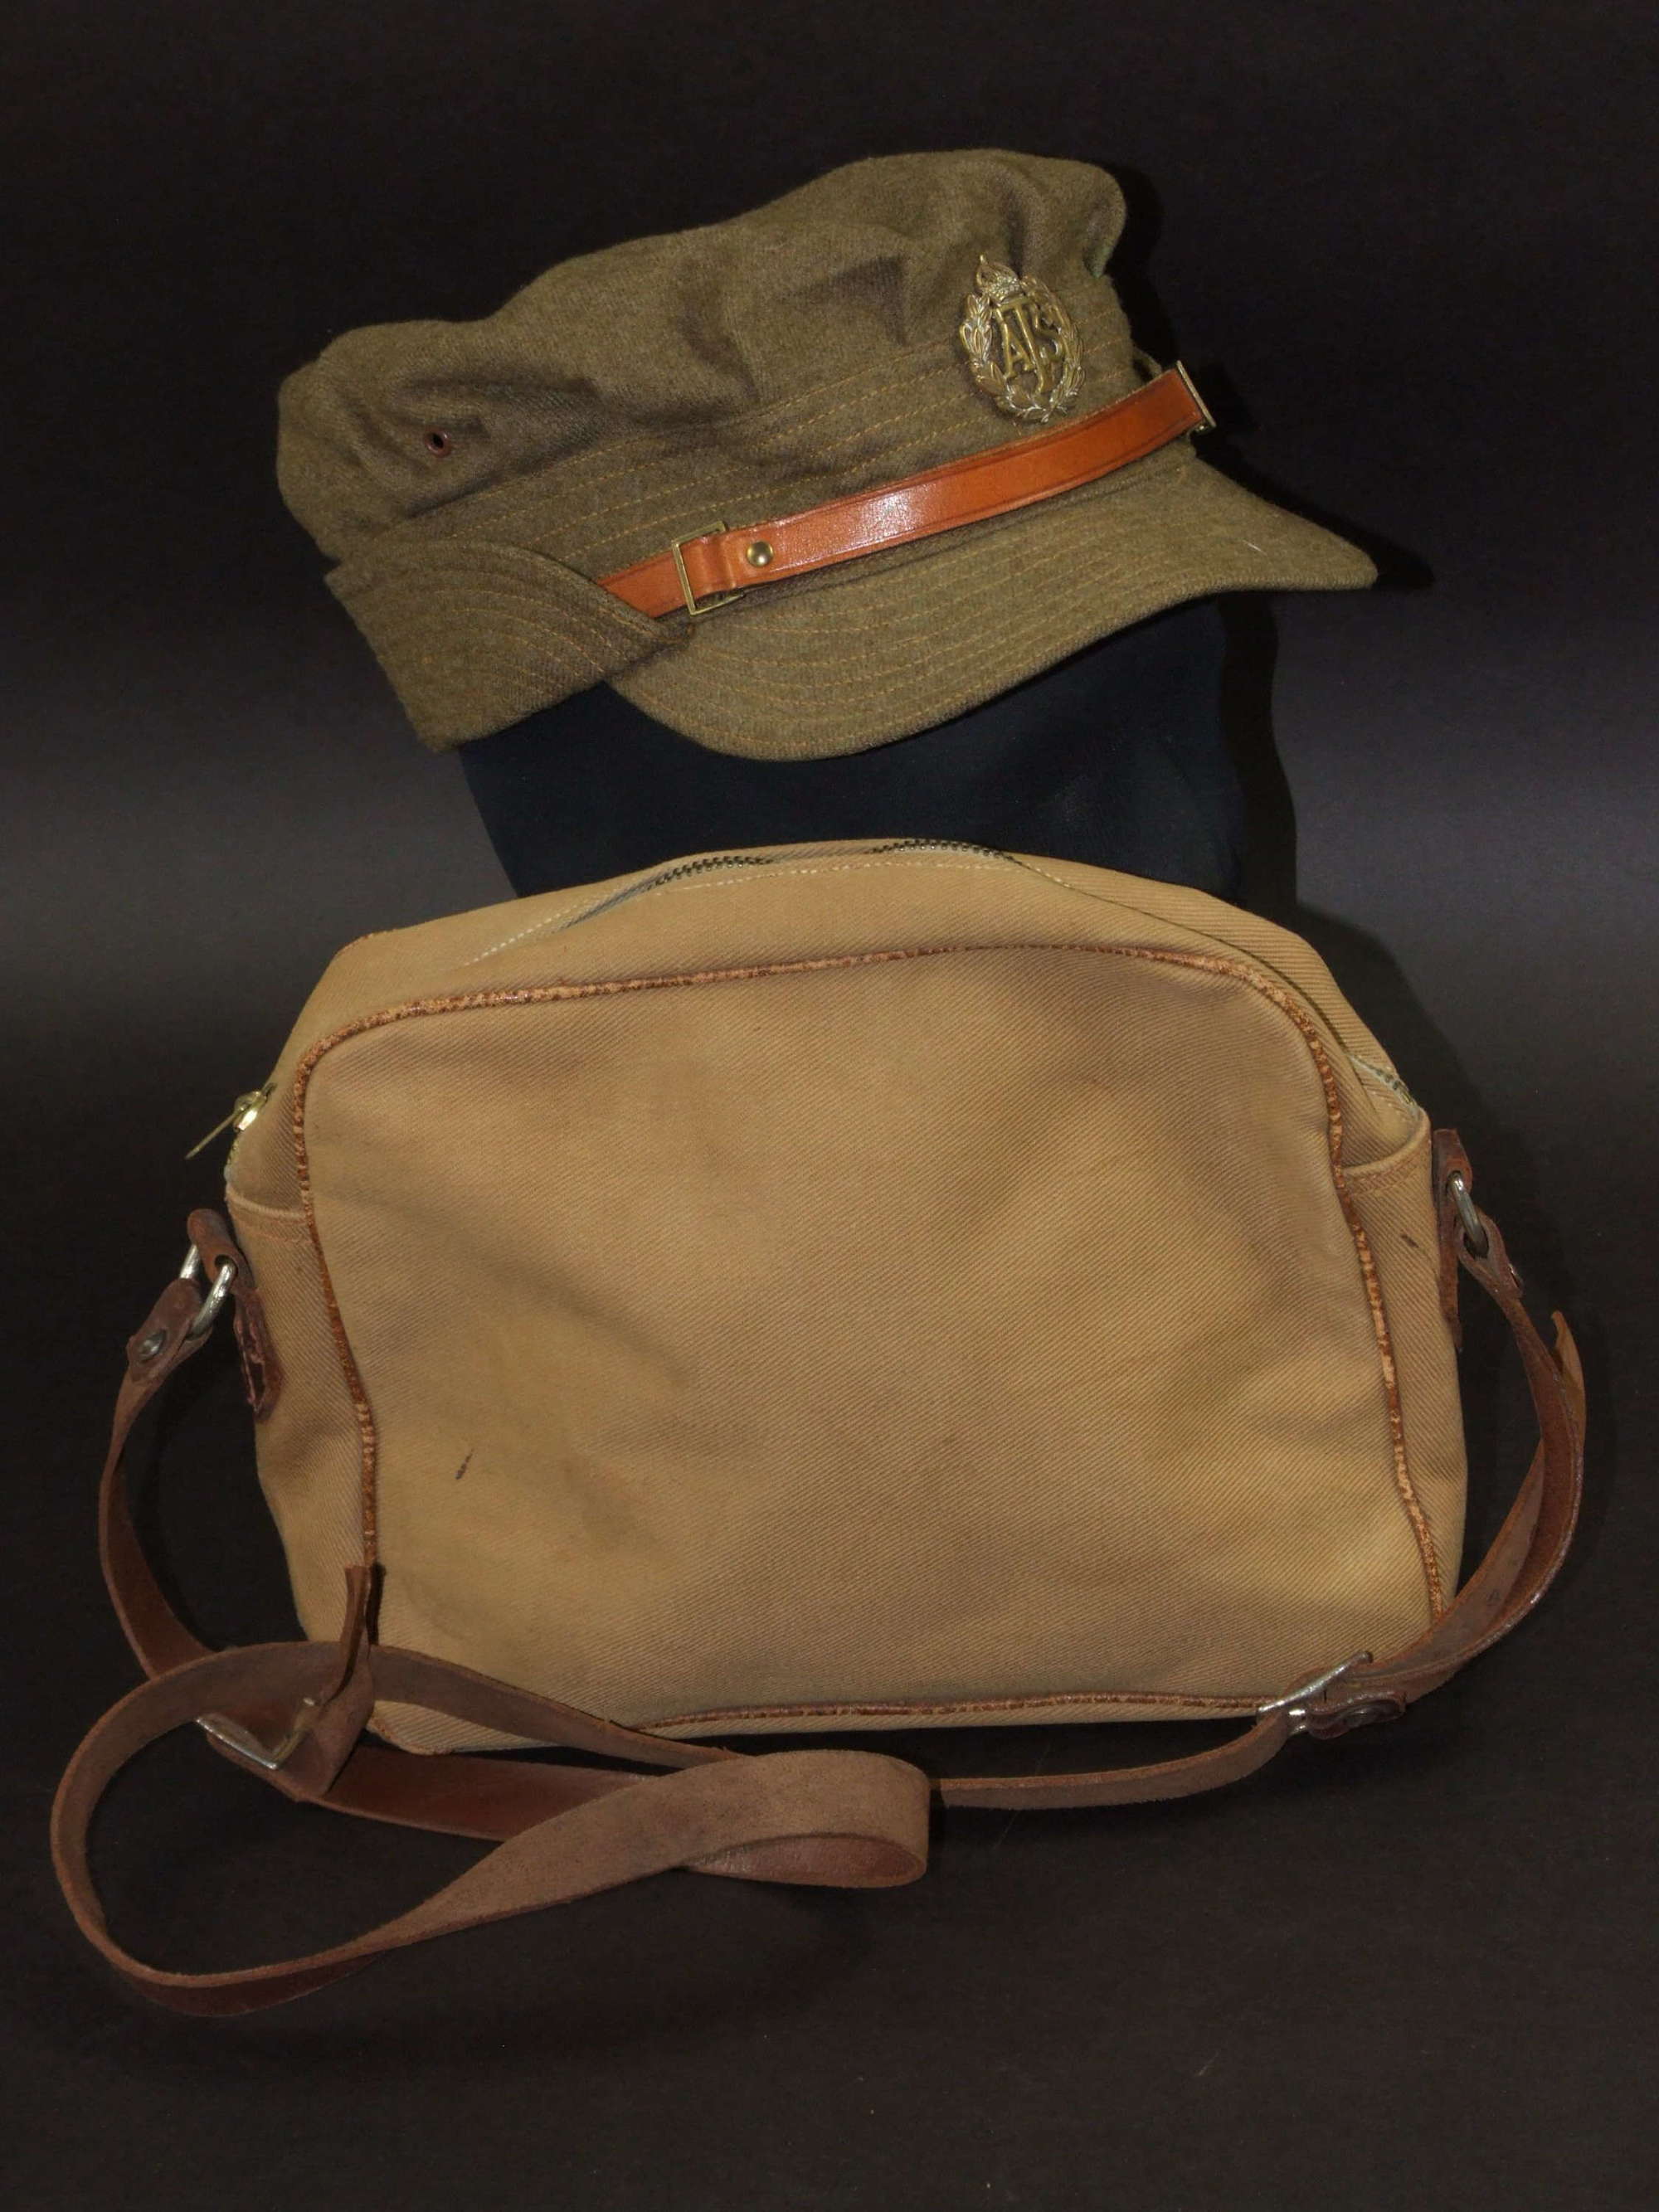 ATS Hat and handbag